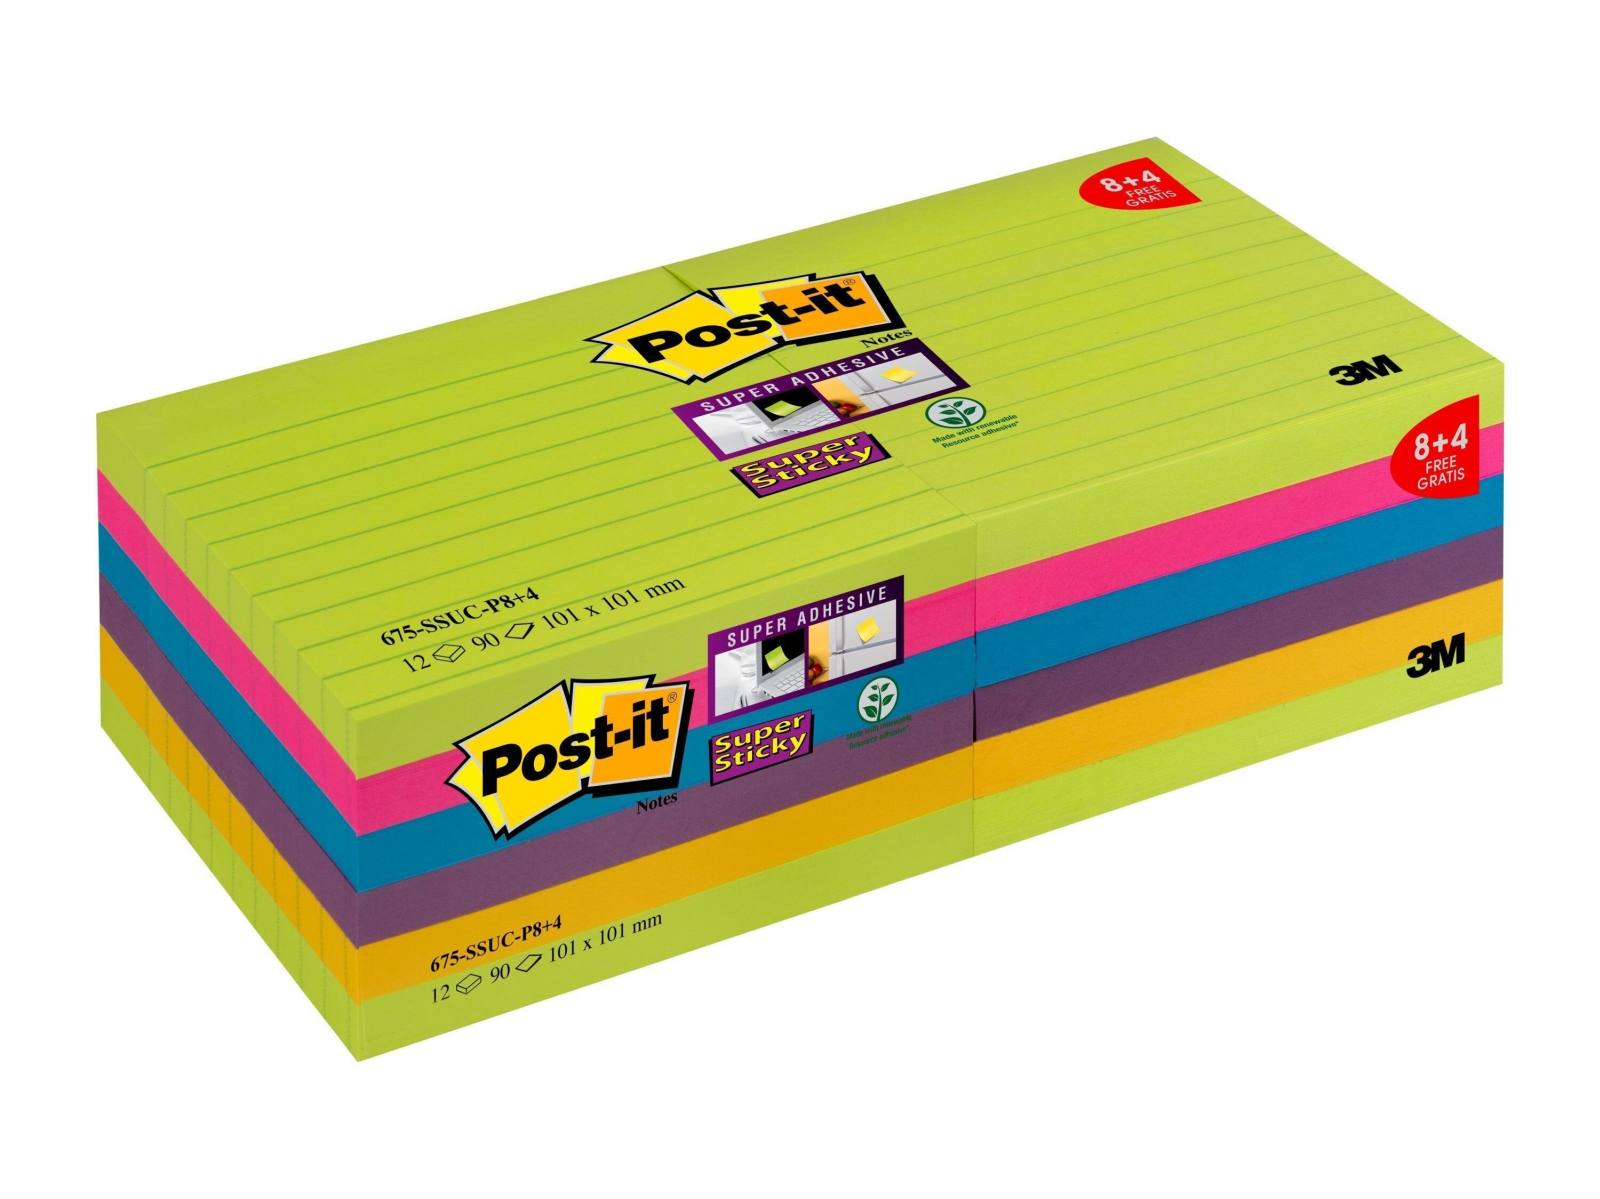 3M Post-it Super Sticky Notes Promoción 4690-SSUC-P4+2 6 blocs de 90 hojas cada uno a un precio especial, verde neón, ultra rosa, amarillo, azul, naranja neón, 101 mm x 152 mm, forrado, certificado PEFC